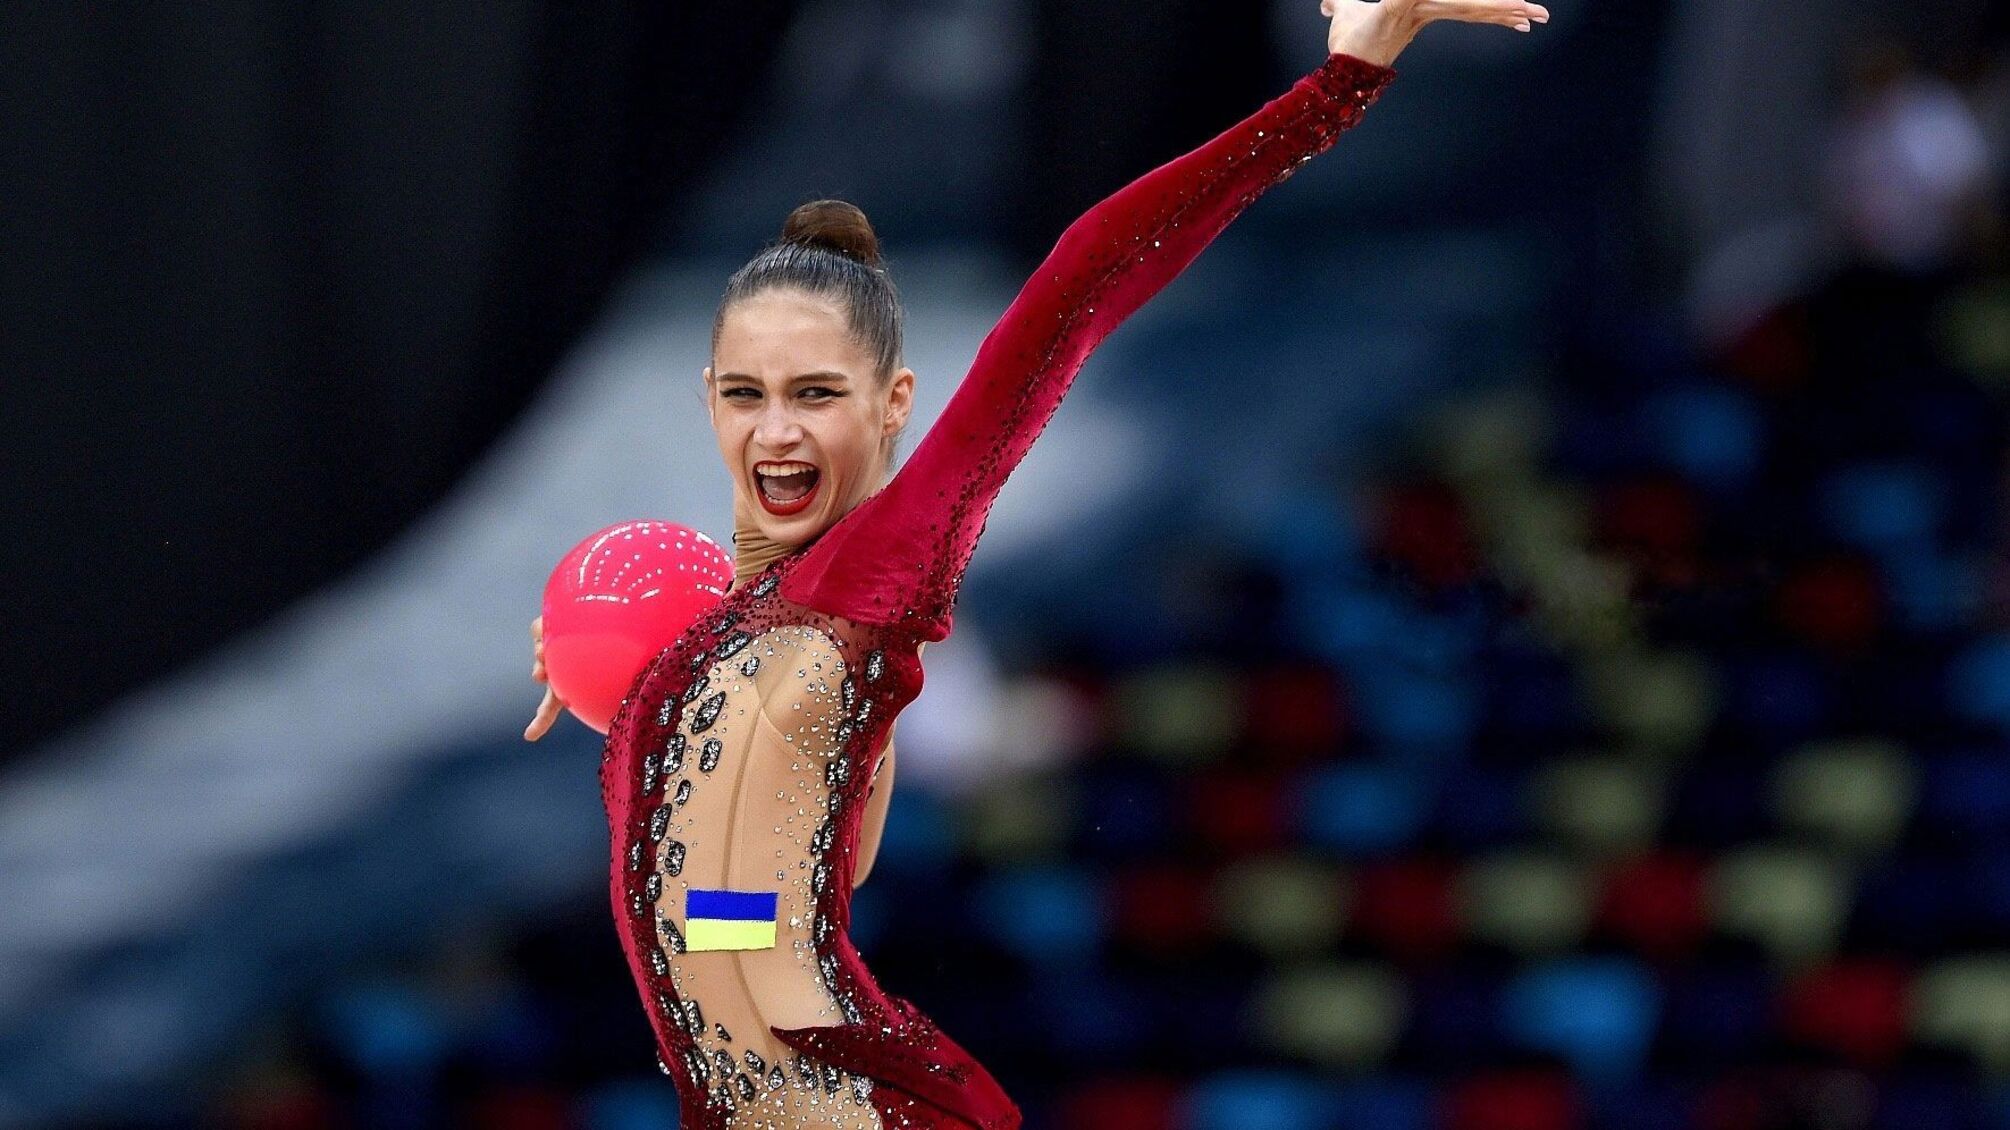 'Ненавижу': гимнастку Никольченко исключили из сборной Украины из-за гневного высказывания по Польше